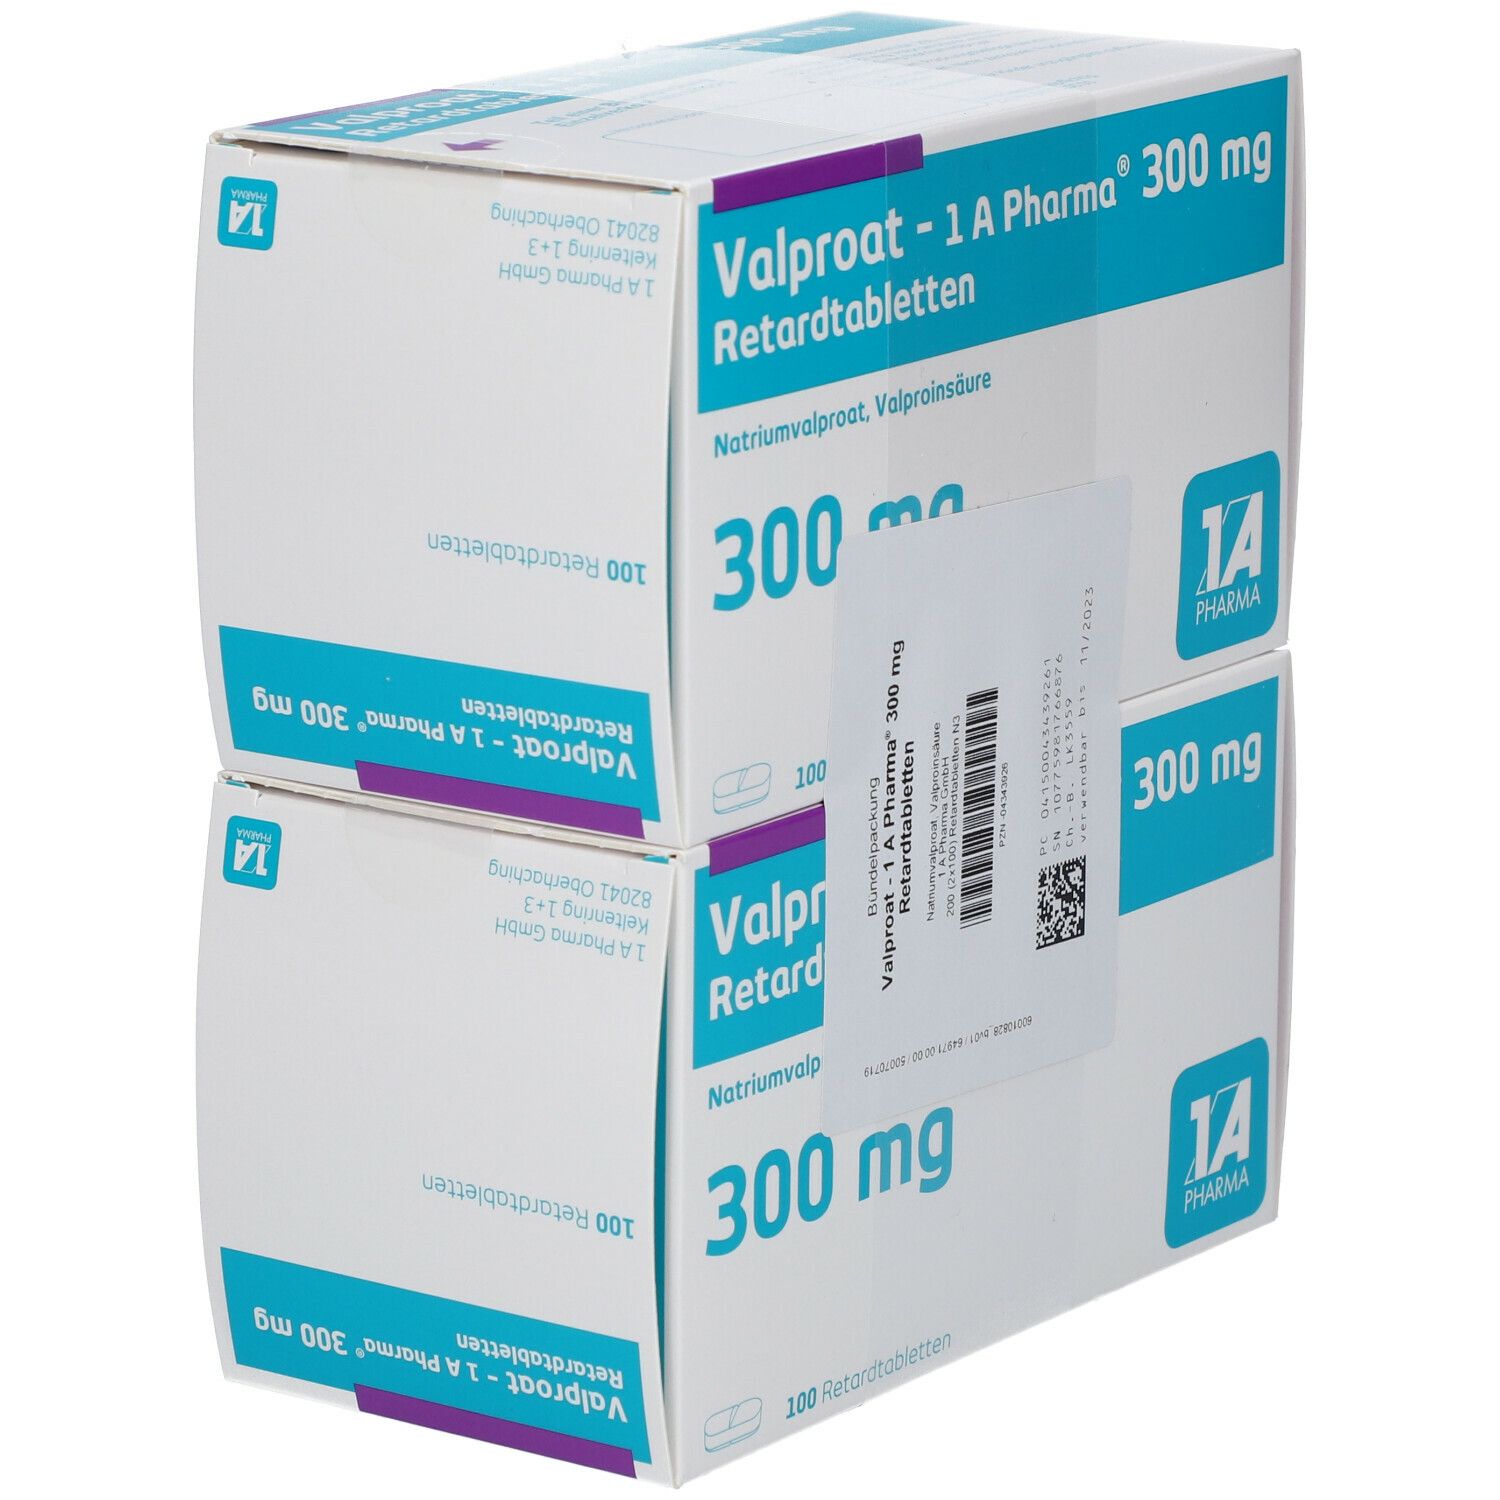 Valproat - 1A Pharma® 300Mg